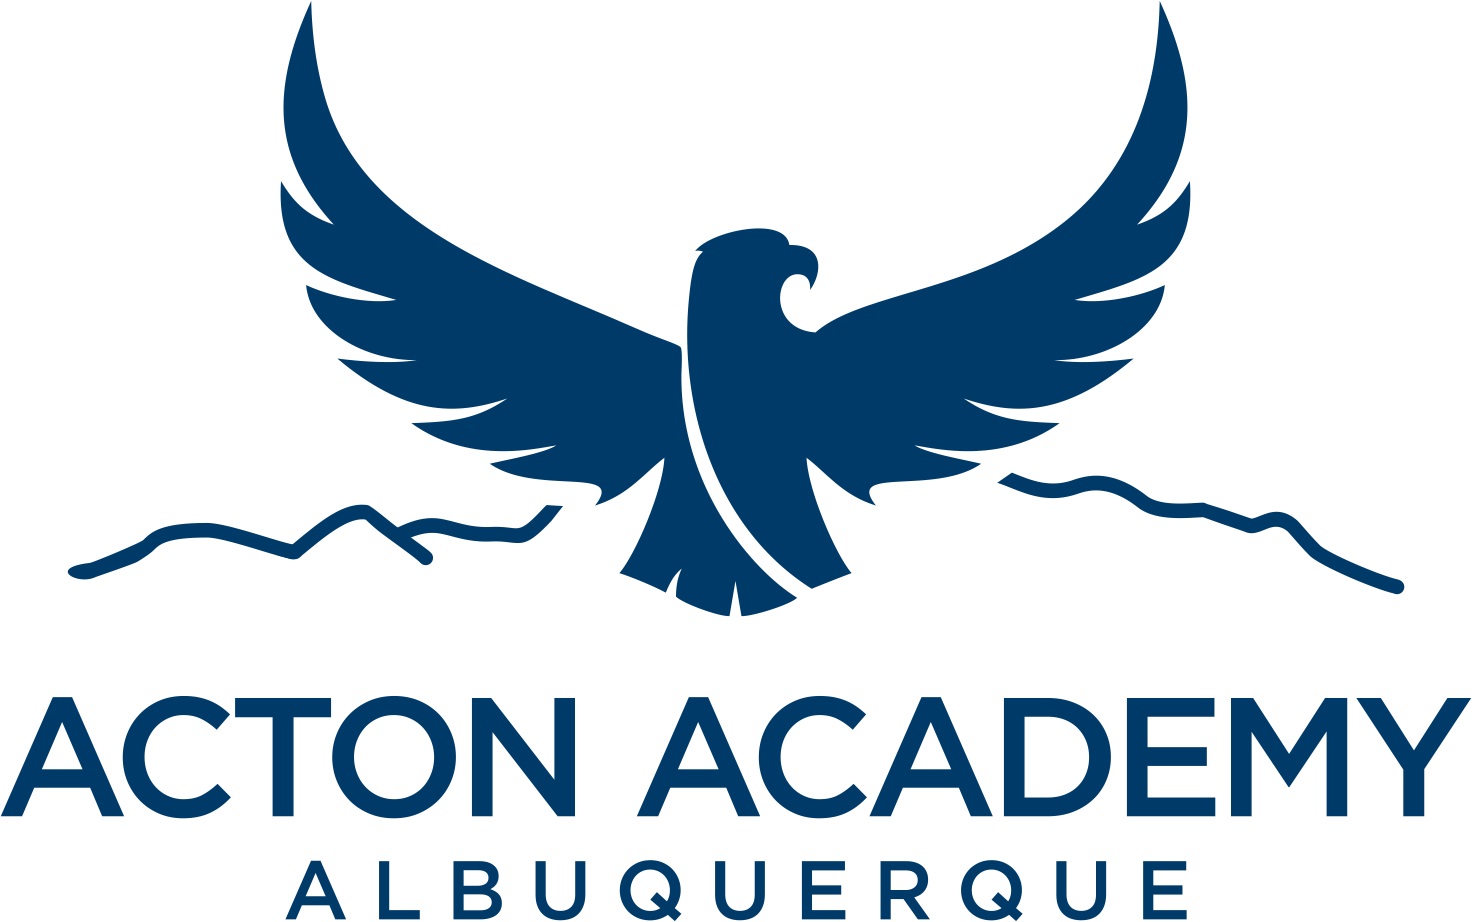 Acton Academy Albuquerque